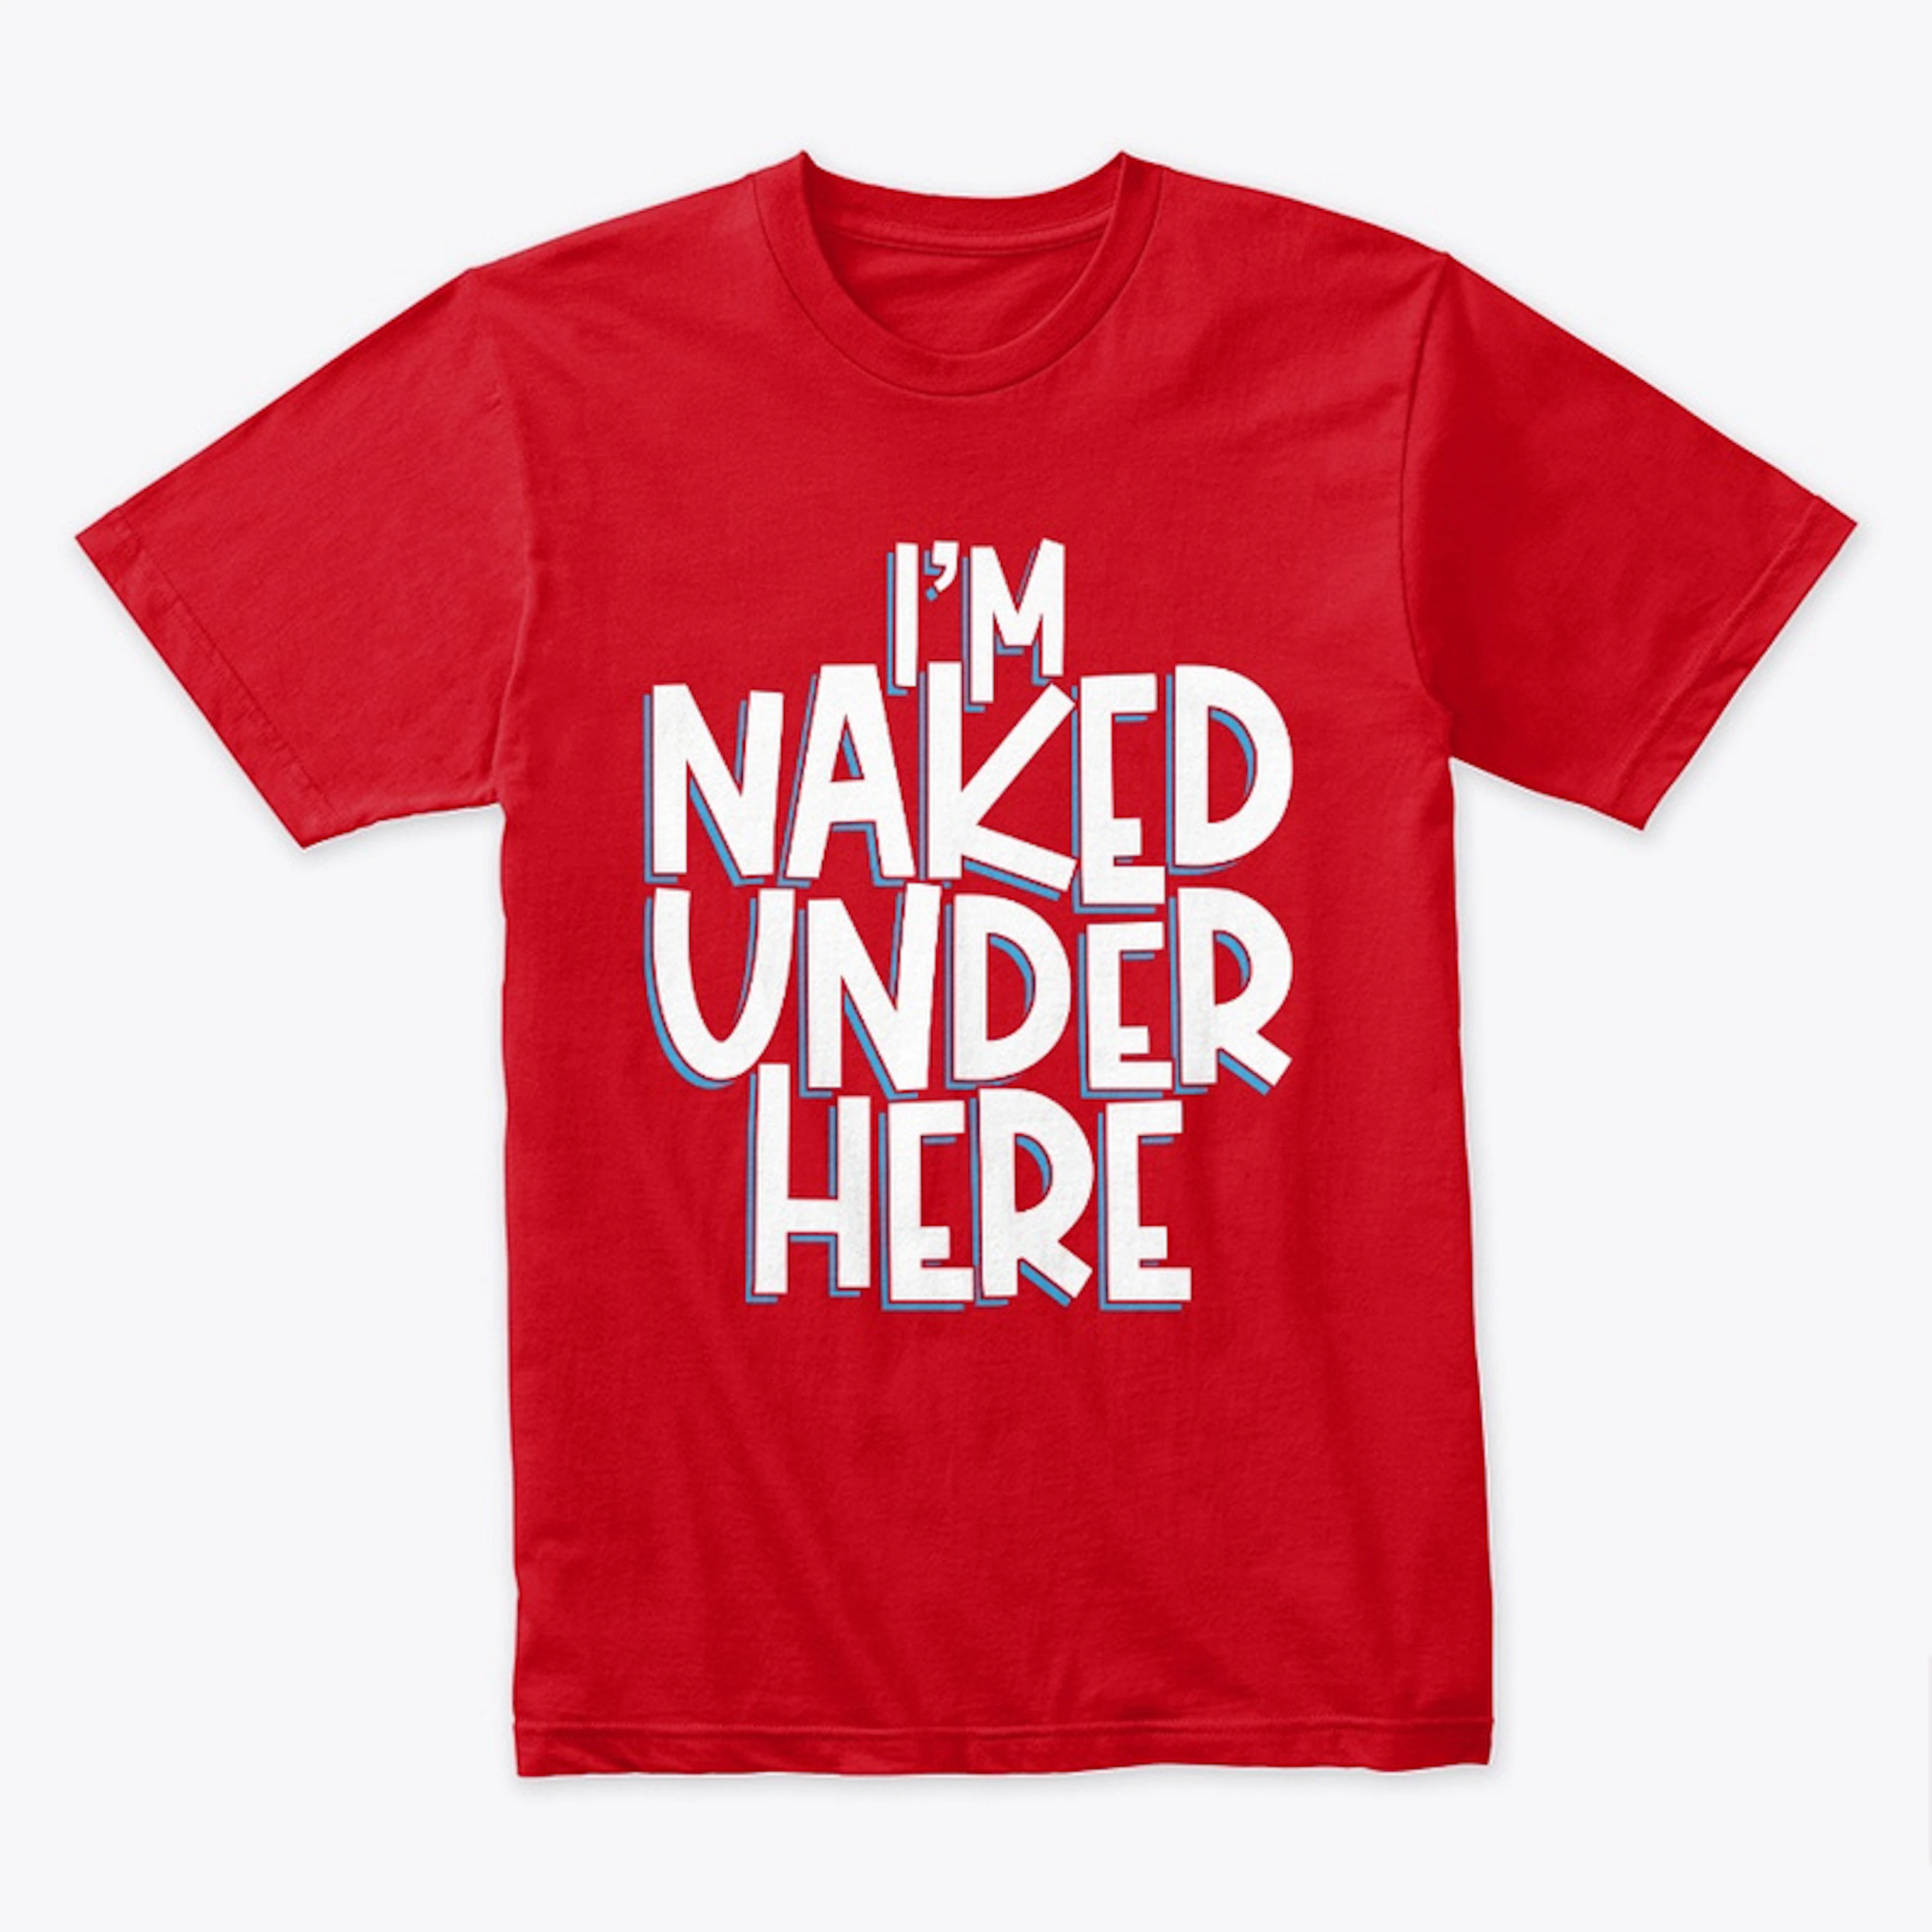 I'm Naked Under Here